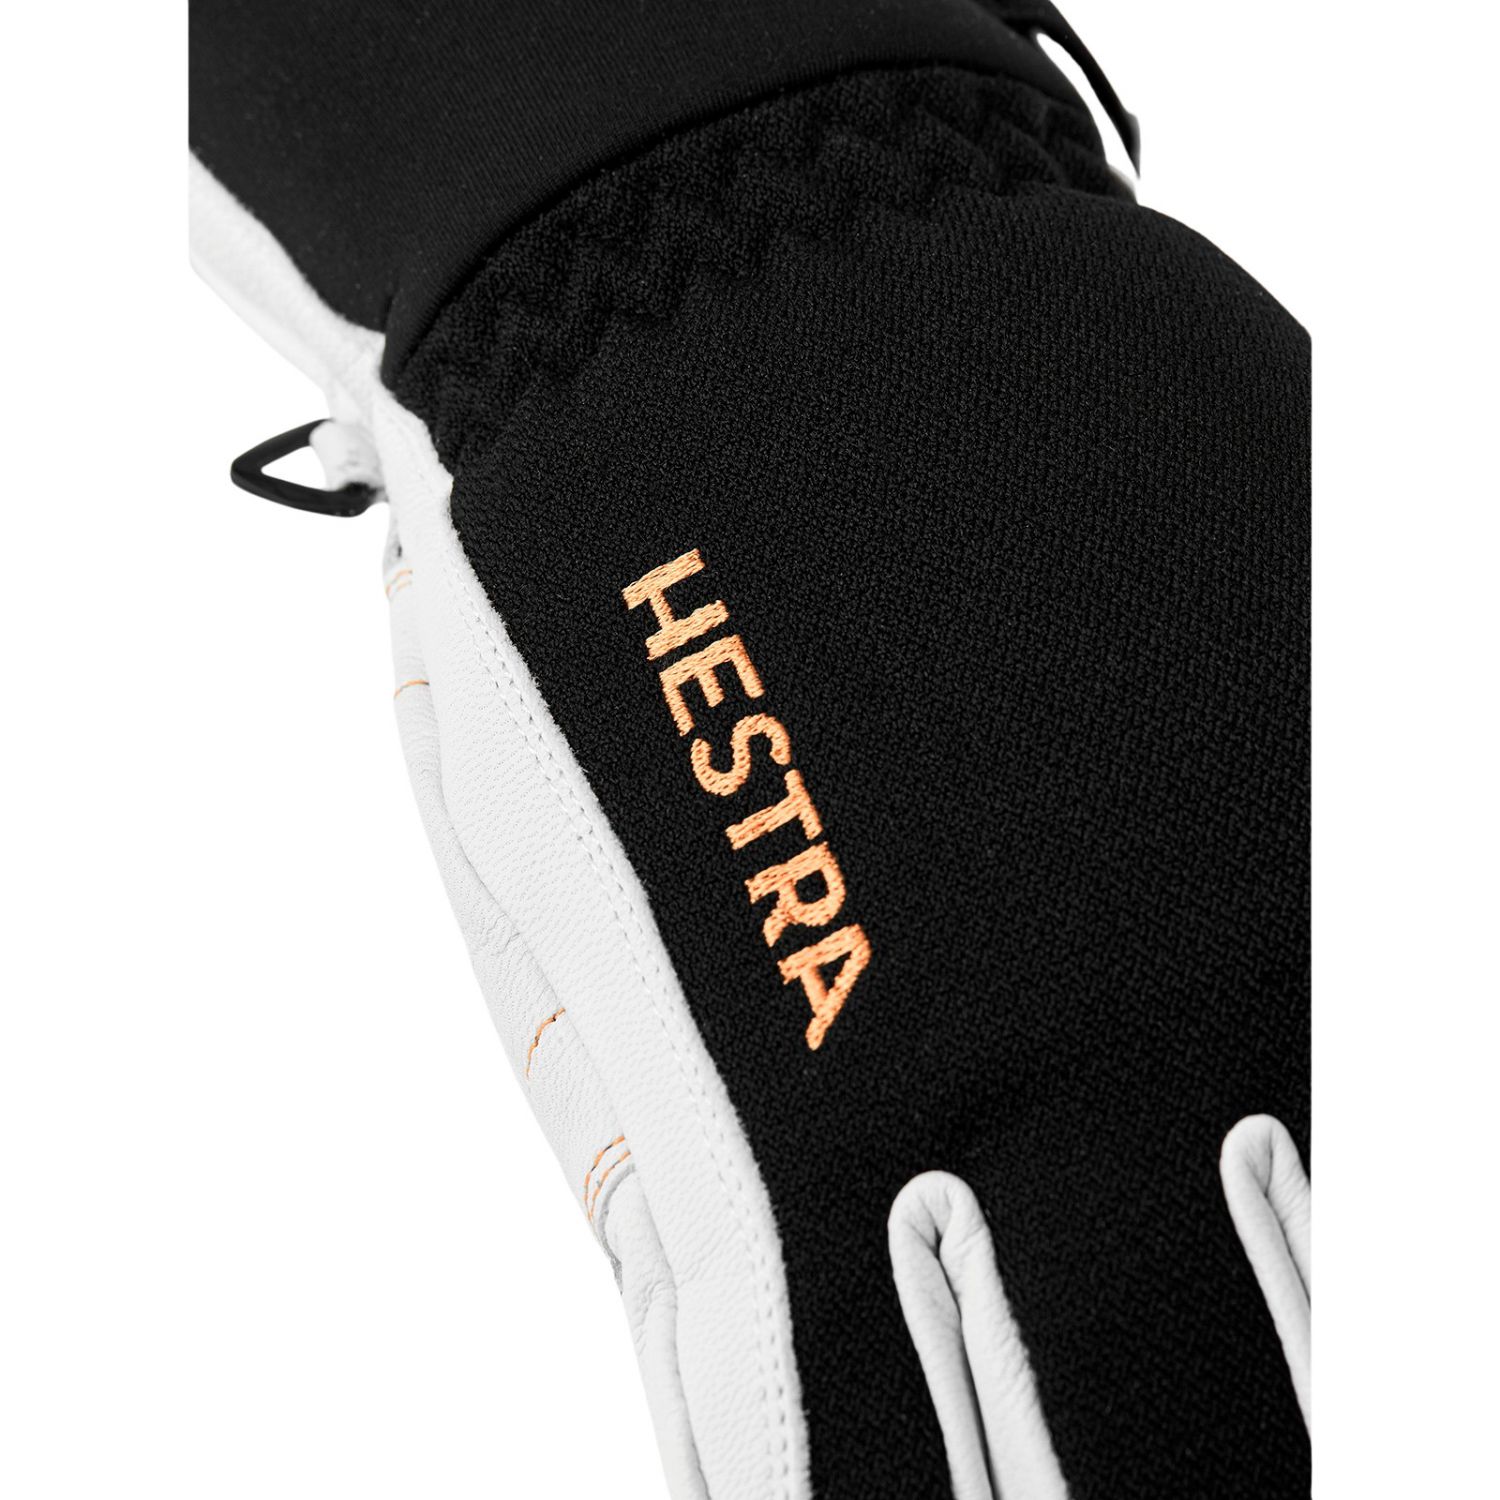 Hestra Army Leather Gore-tex skihandsker, sort/hvid